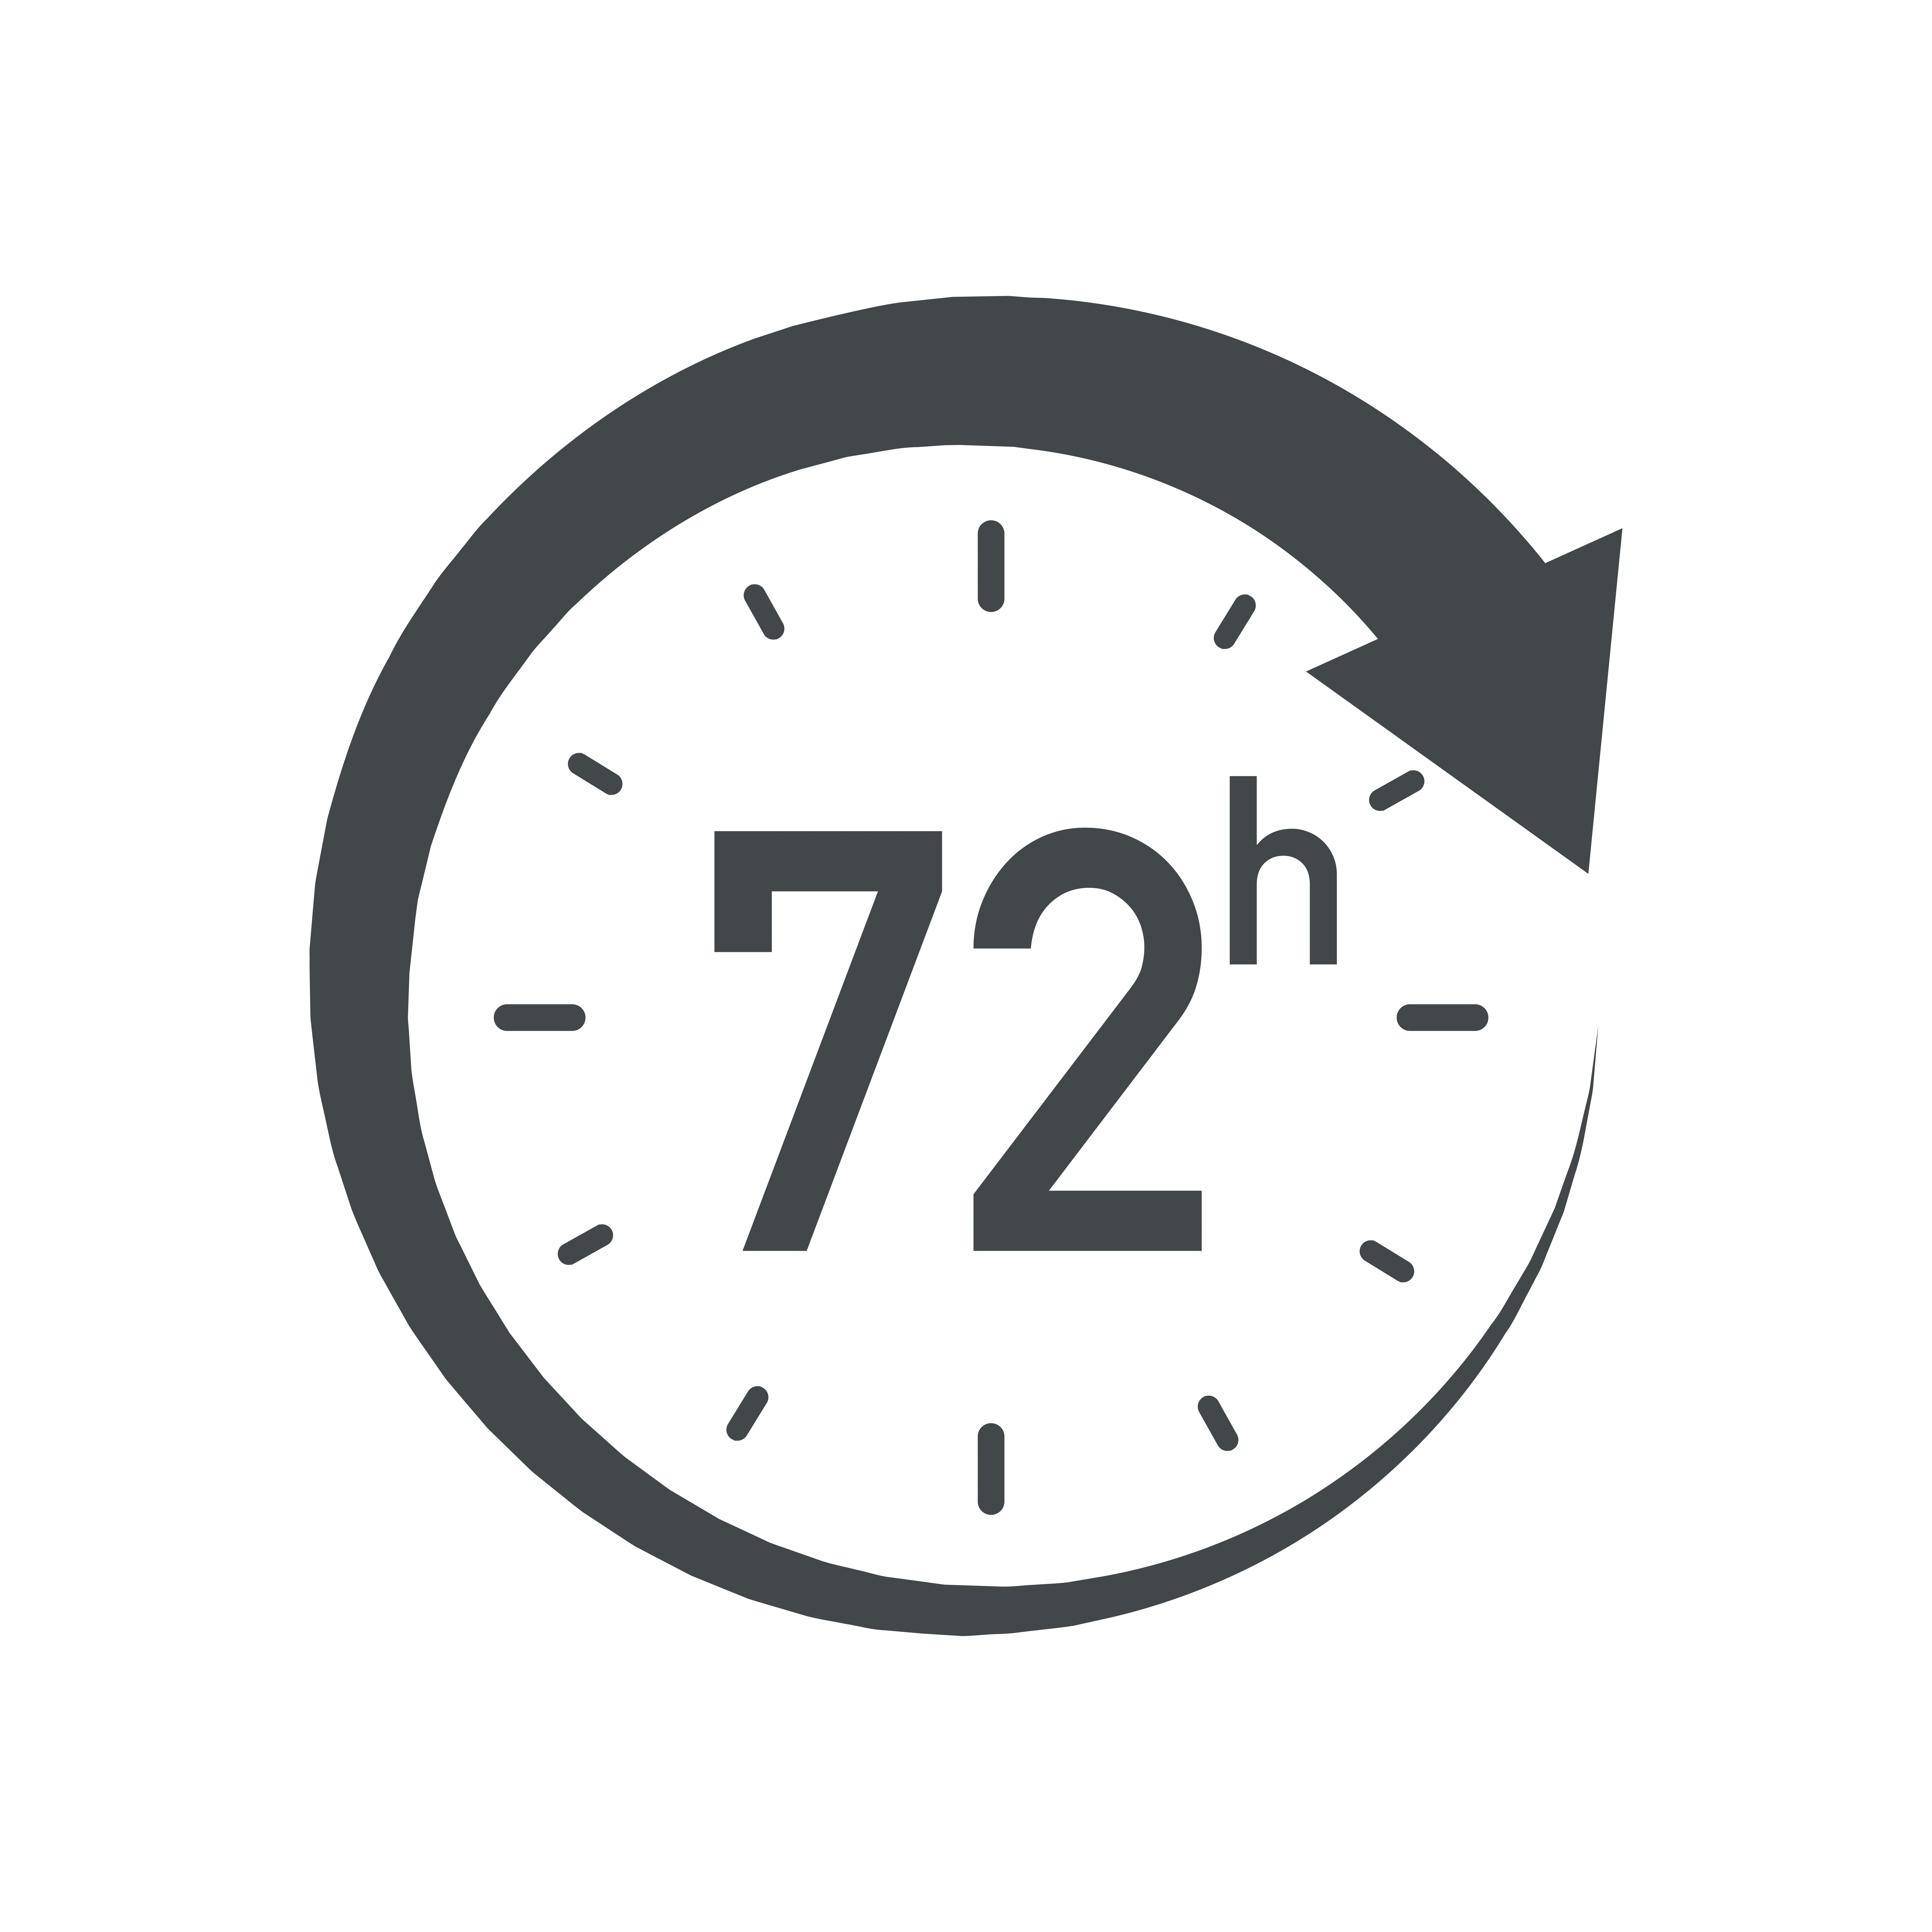 24 7 1 48. Значок 24 часа. 24 Часа вектор. 24/7 Логотип. Часы вектор 24 часа.